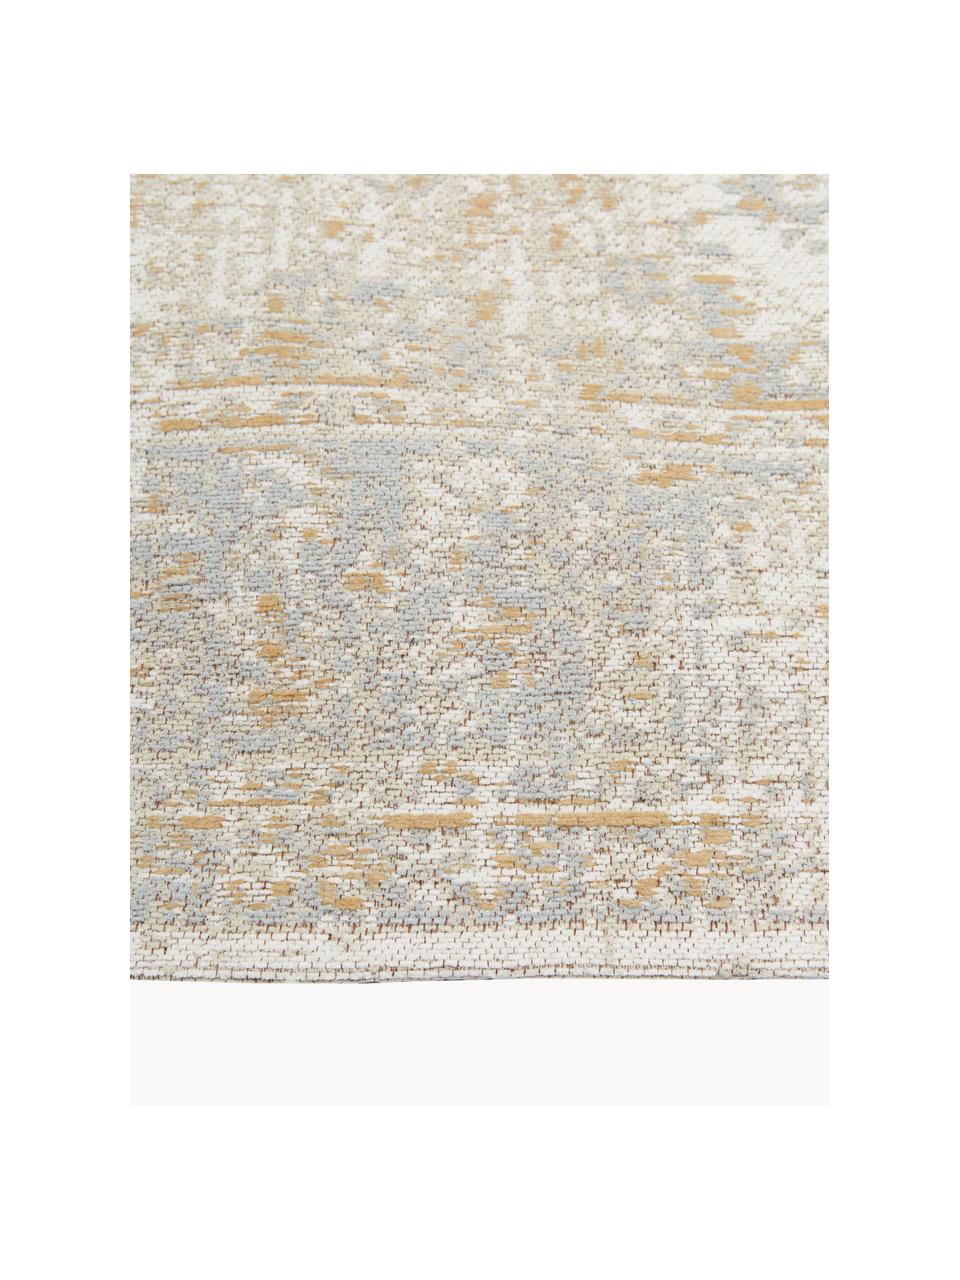 Ručně tkaný žinylkový koberec Loire, Odstíny béžové, Š 200 cm, D 300 cm (velikost L)